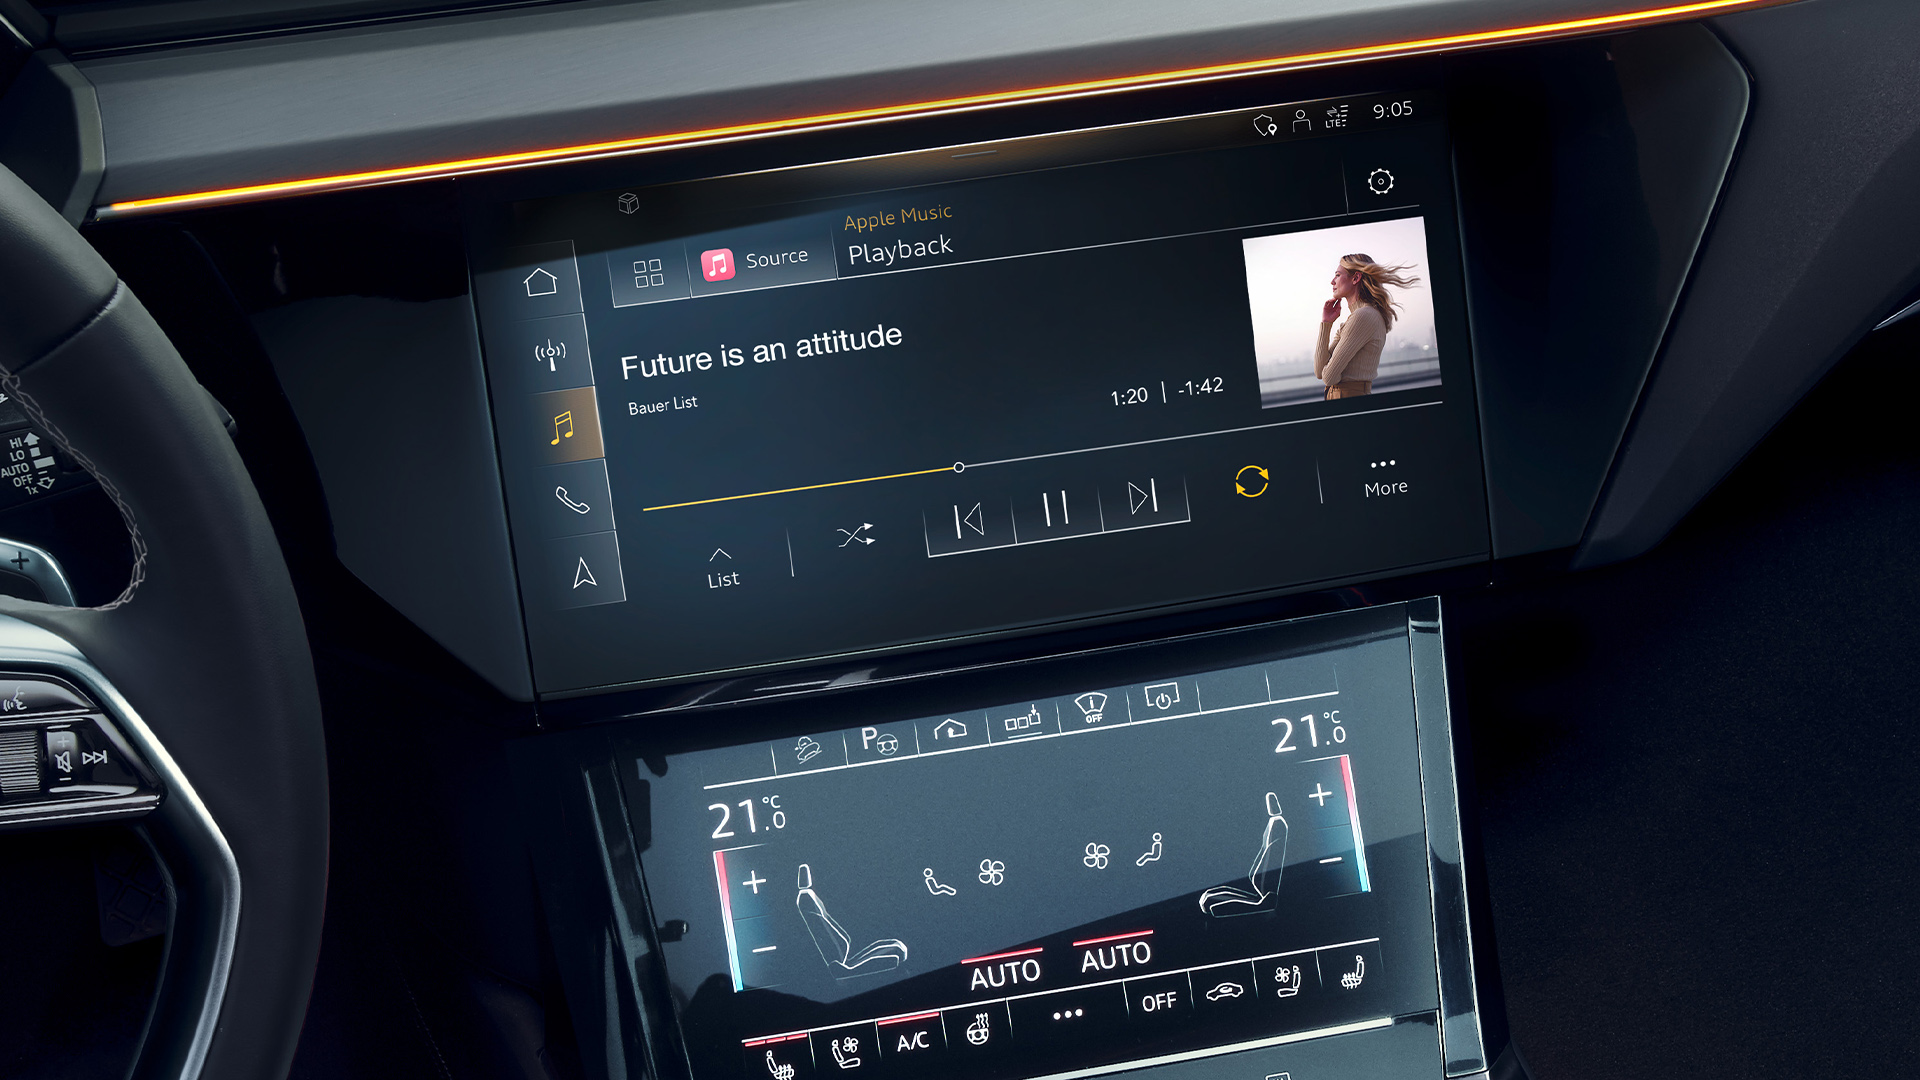 Primer plano de la pantalla del vehículo reproduciendo música.